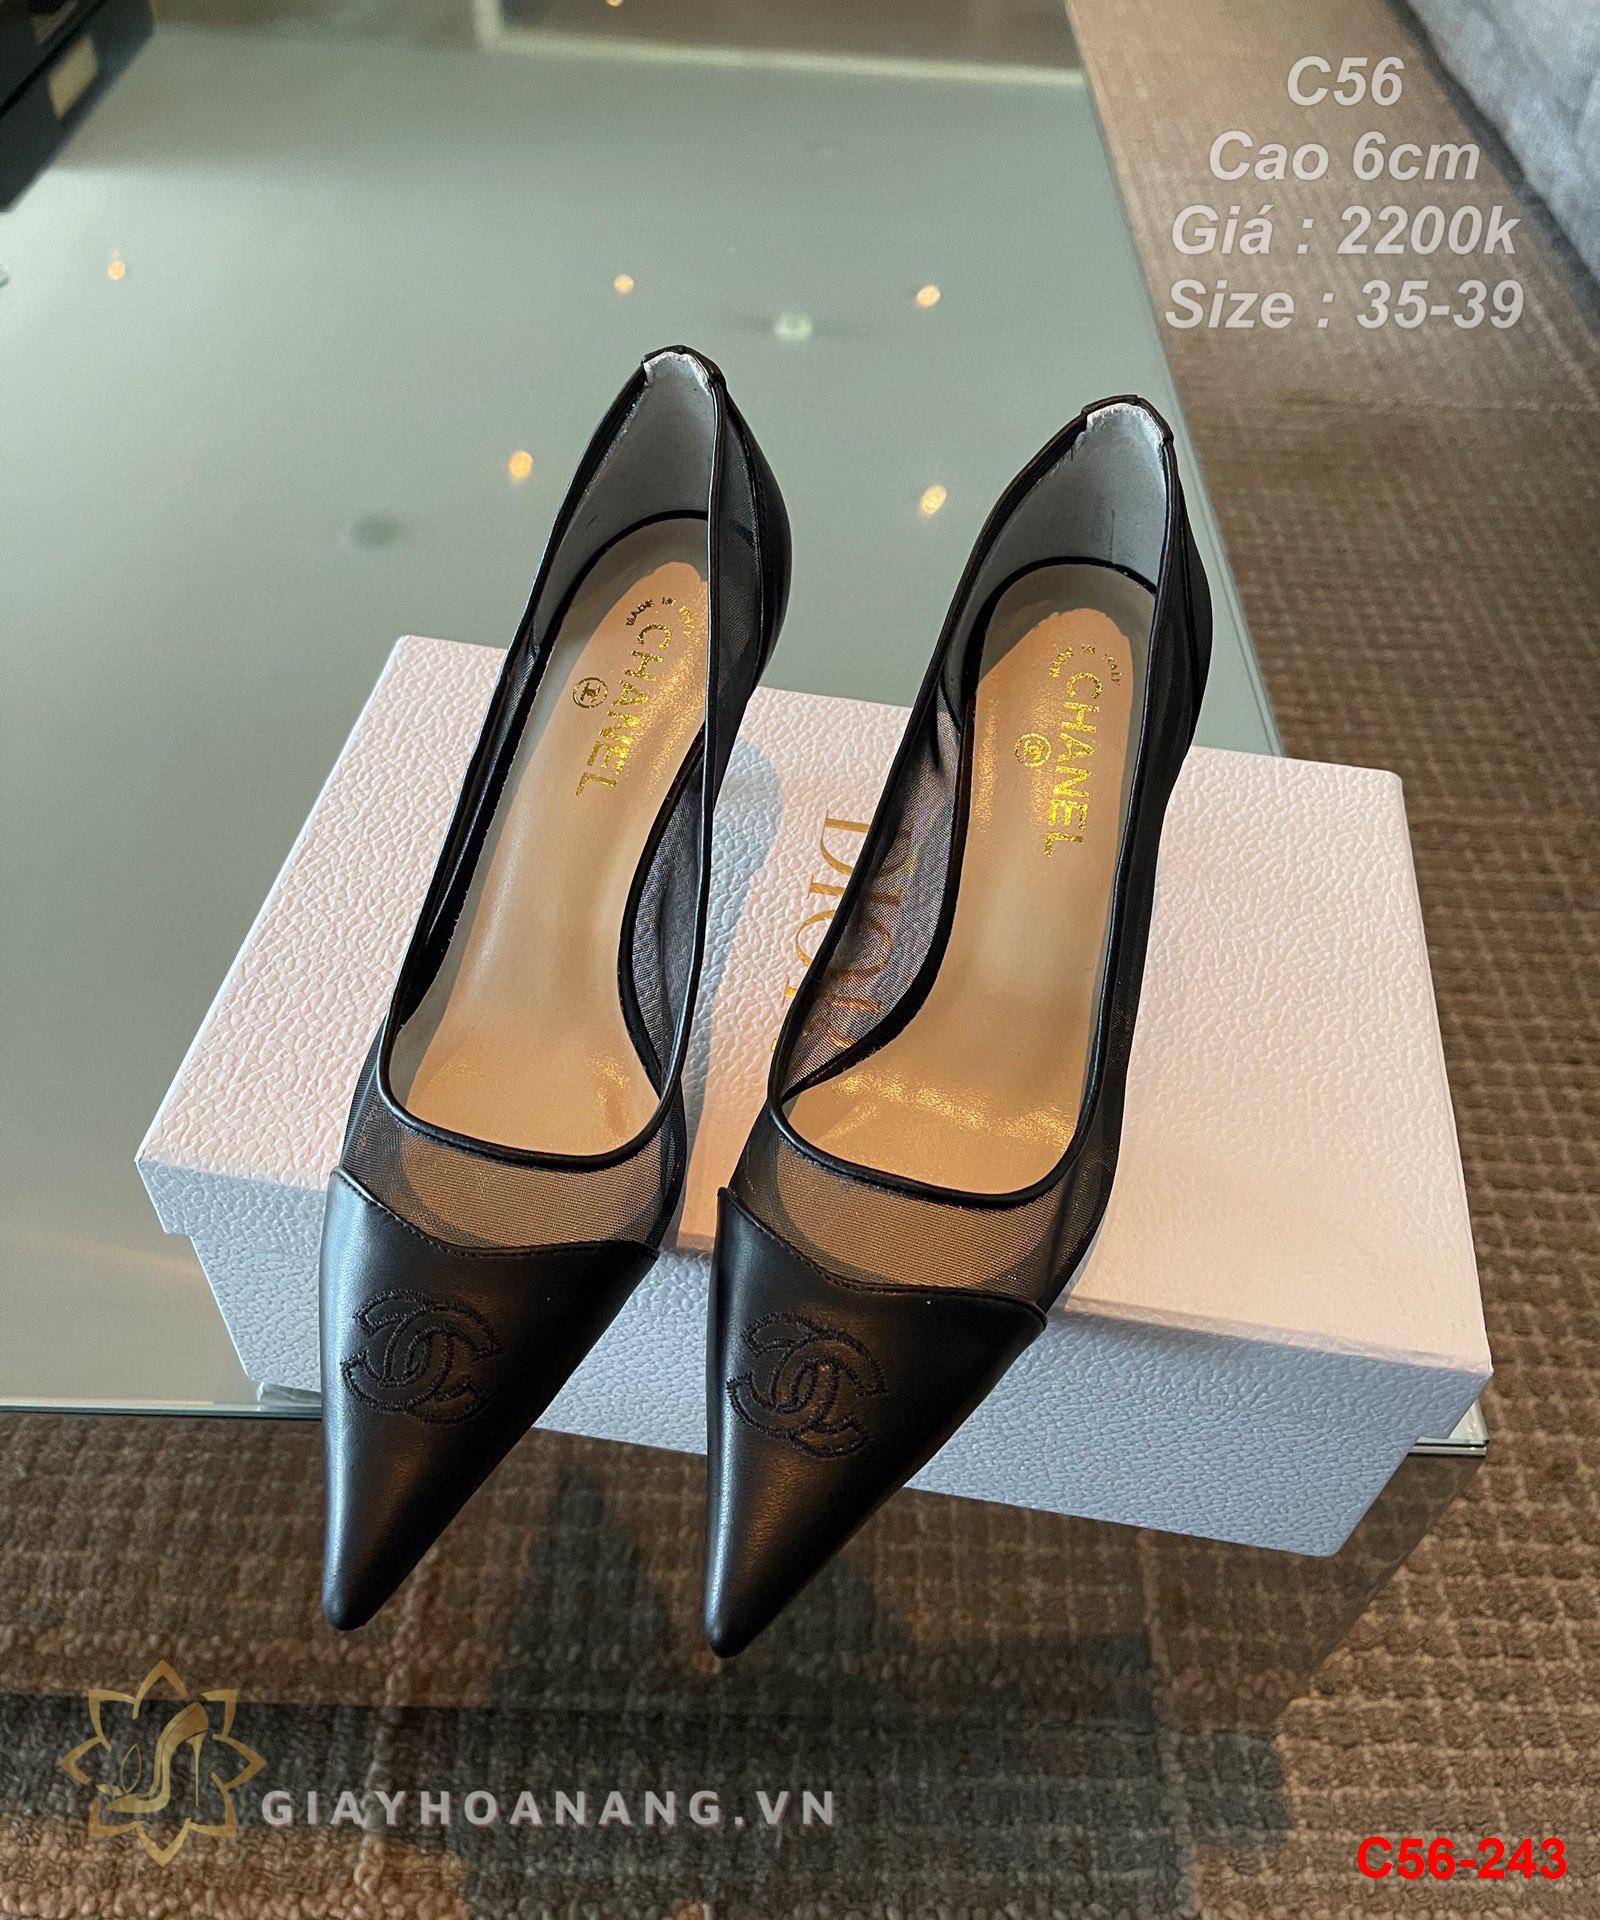 C56-243 Chanel giày cao 6cm siêu cấp